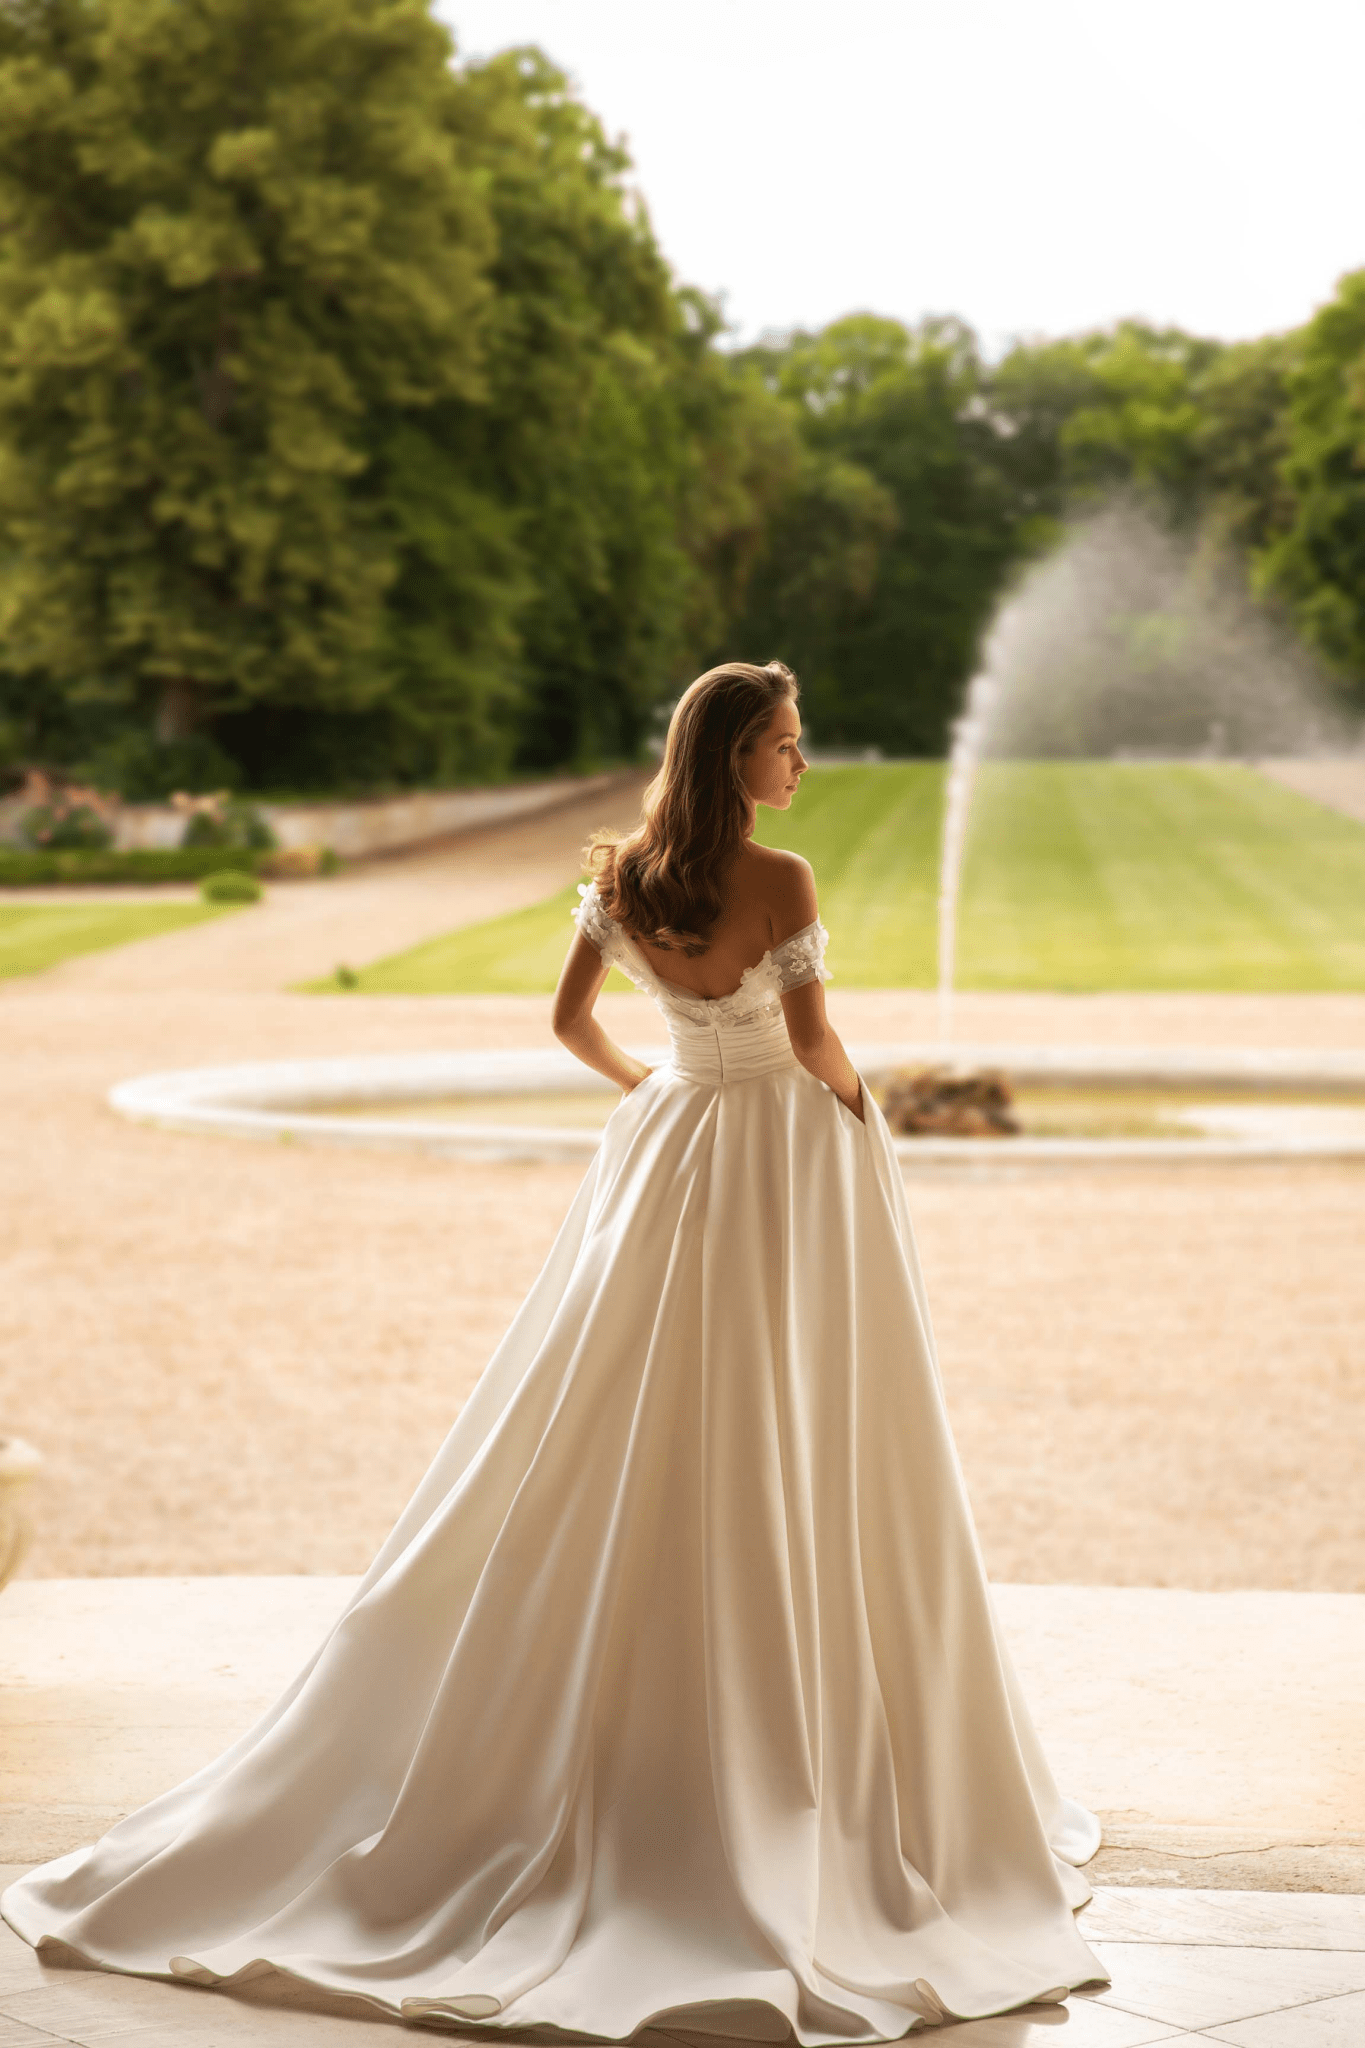 Elegant Ivory A-Line Dress for Wedding - Princess Wedding Dress - Off-Shoulder Floral Wedding Gown Plus Size - WonderlandByLilian